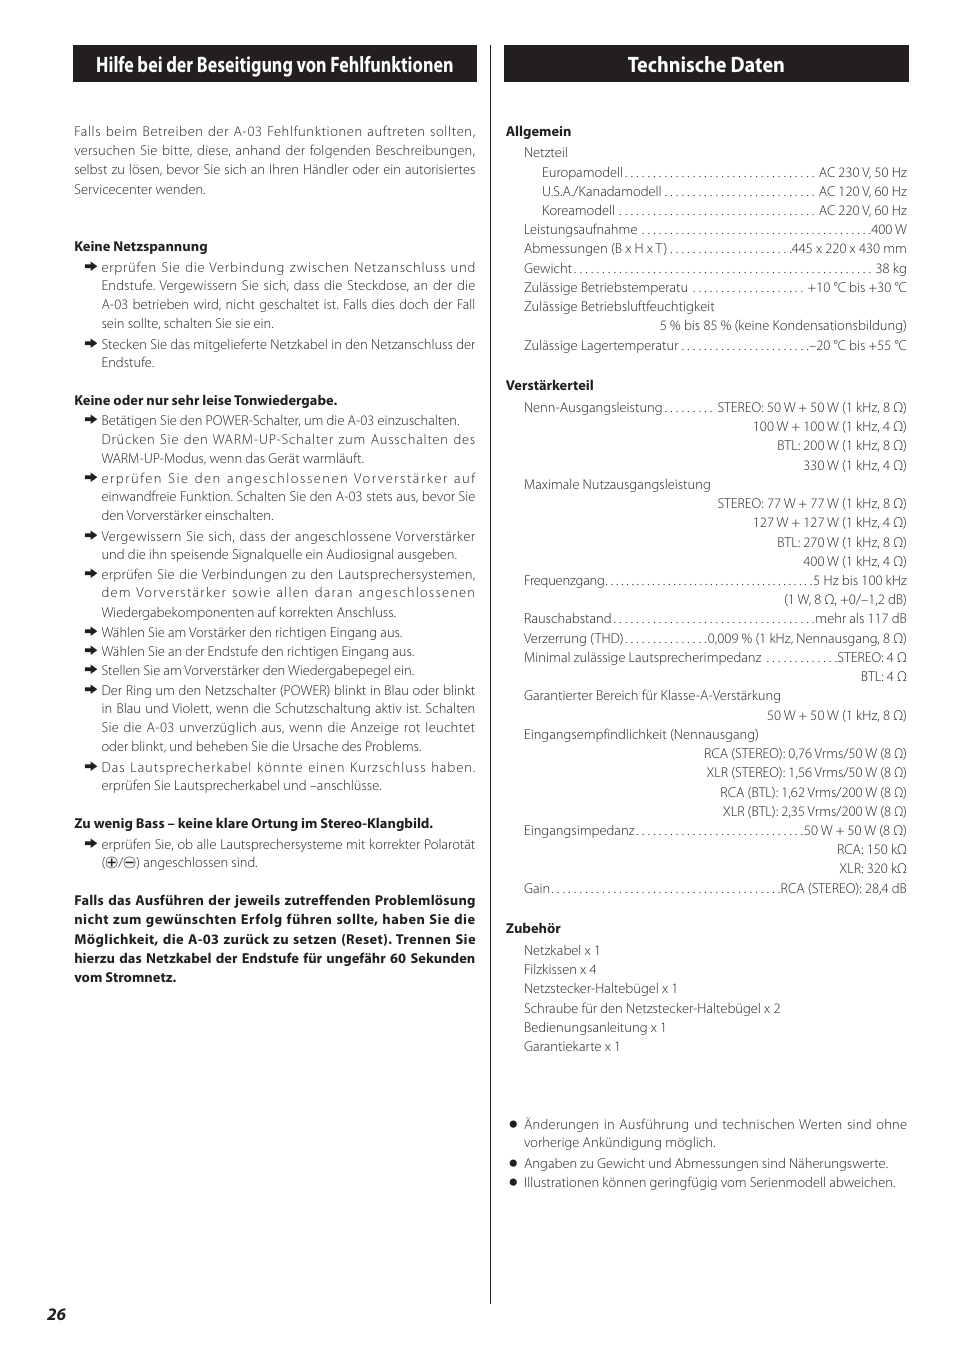 Hilfe bei der beseitigung von fehlfunktionen, Technische daten | Teac A-03 User Manual | Page 26 / 28